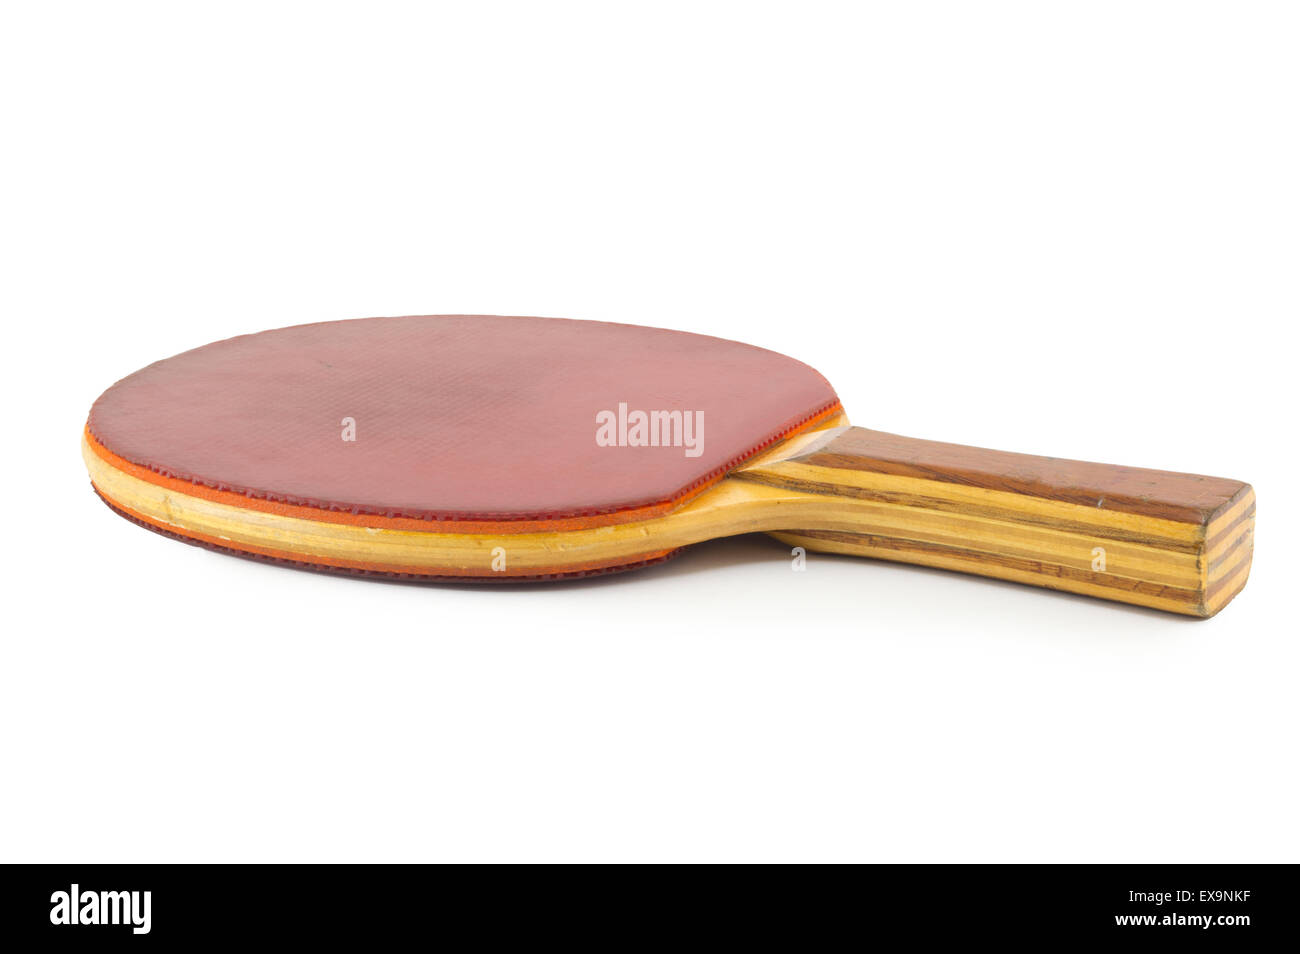 Ancienne raquette de tennis de table rouge professionnel isolated on white Banque D'Images